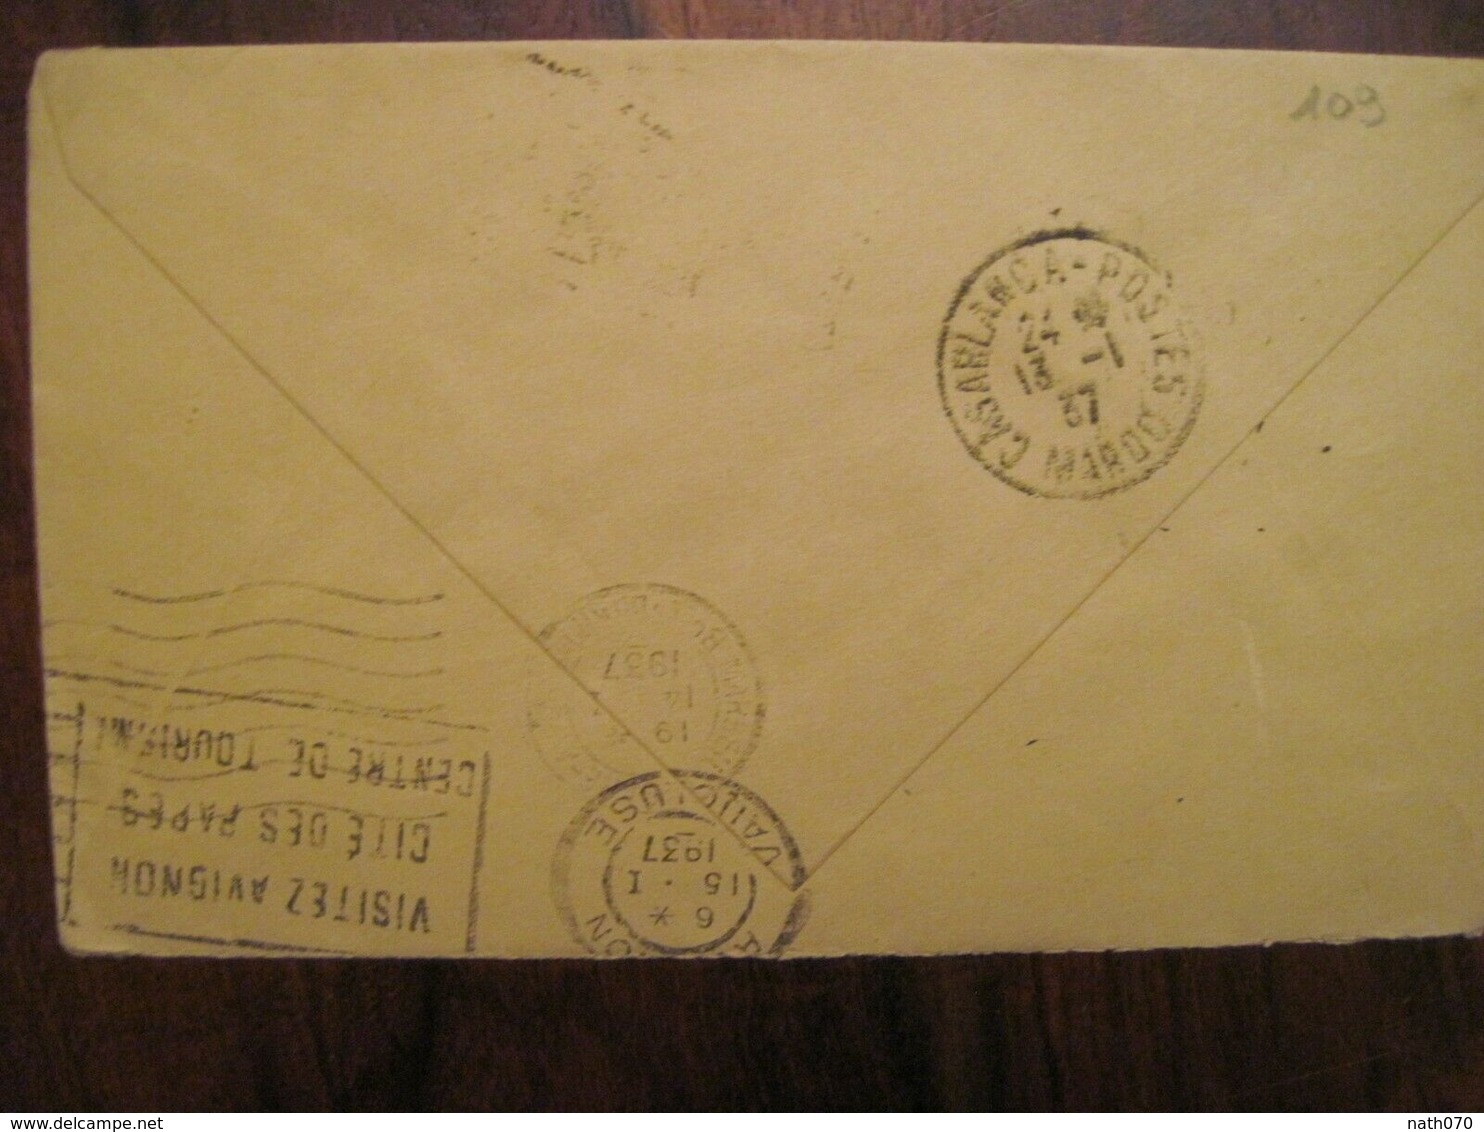 MAROC 1937 2e RTM France Marrakech GUELIZ Avignon Franchise FM Militaire Enveloppe Cover Colonie Air Mail Tirailleurs - Cartas & Documentos